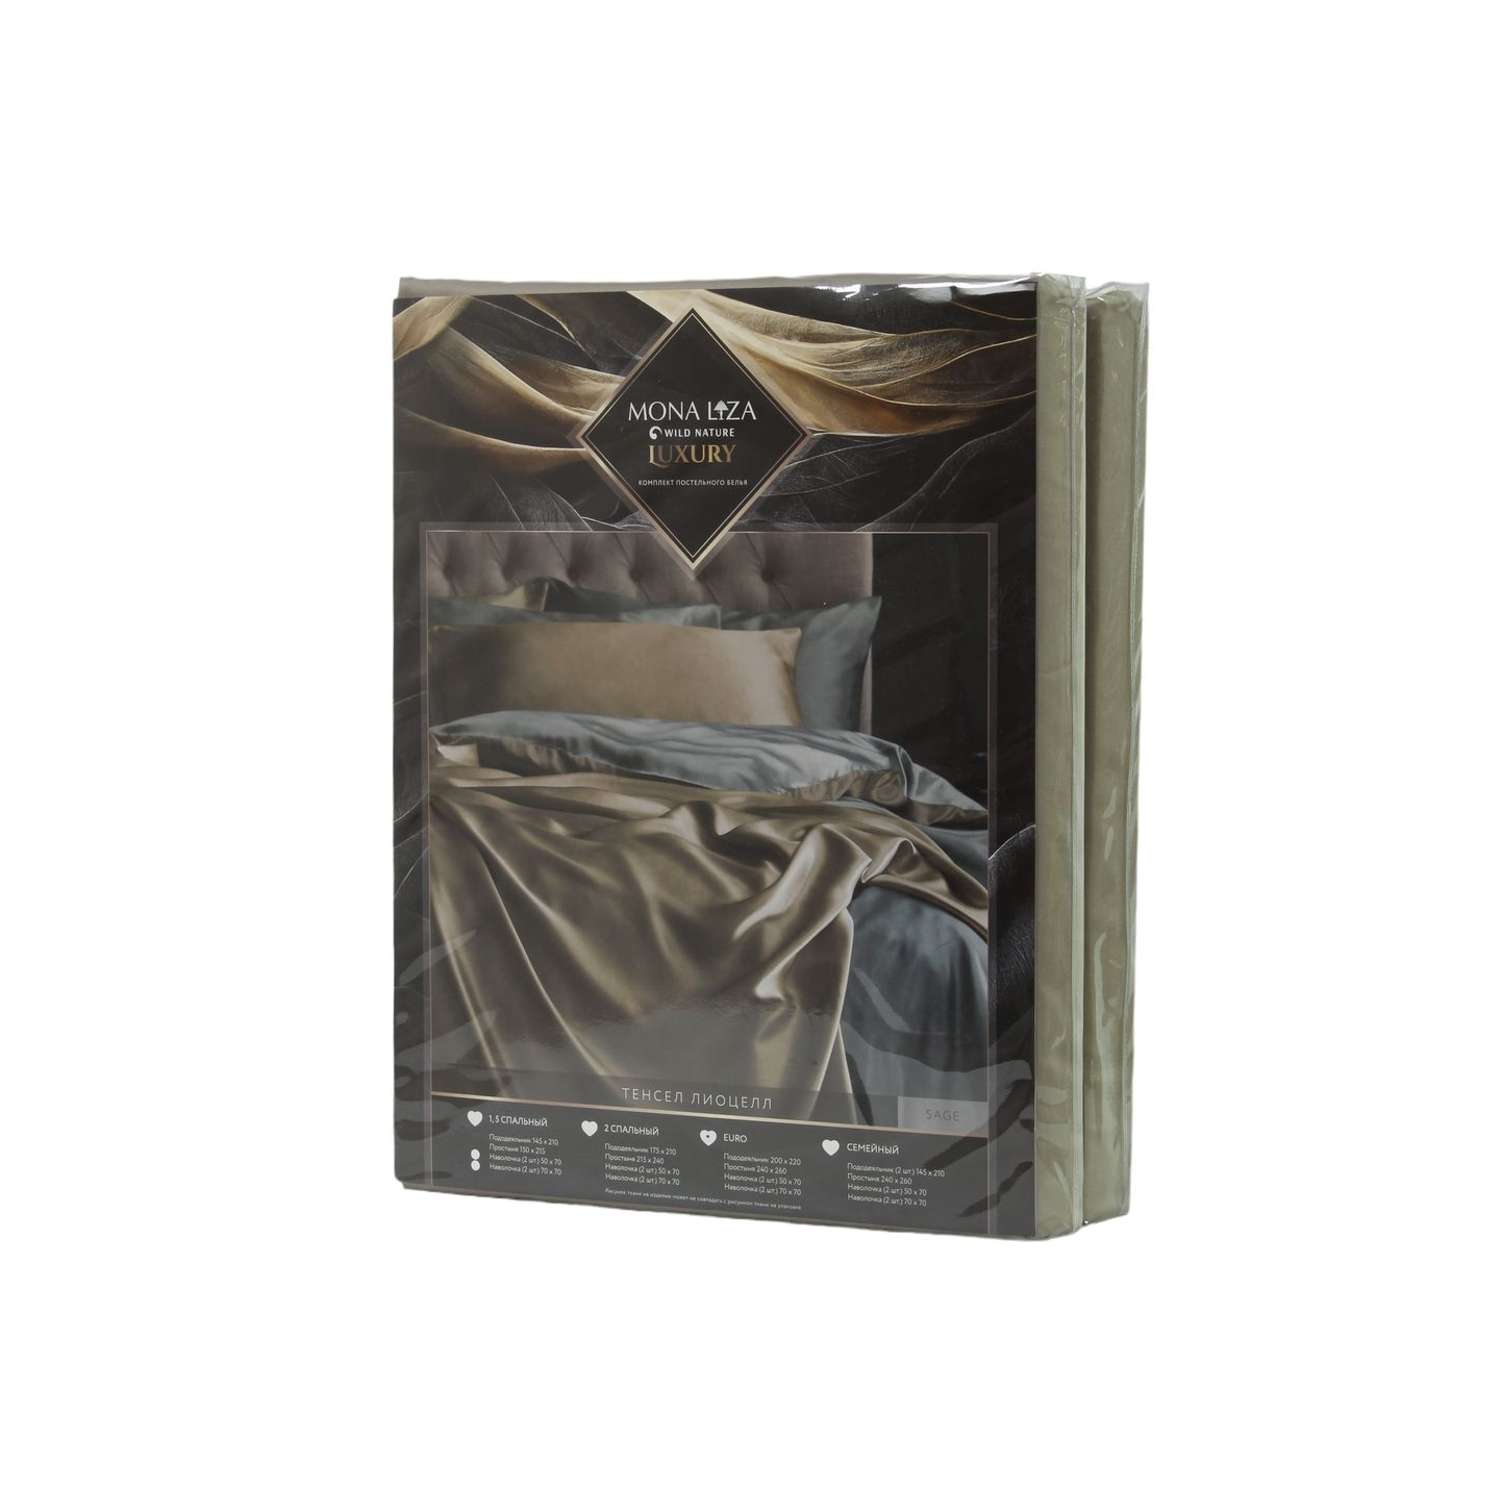 Комплект постельного белья Mona Liza 2 спальный ML Luxury sage тенсель лиоцелл шалфей/камень - фото 6